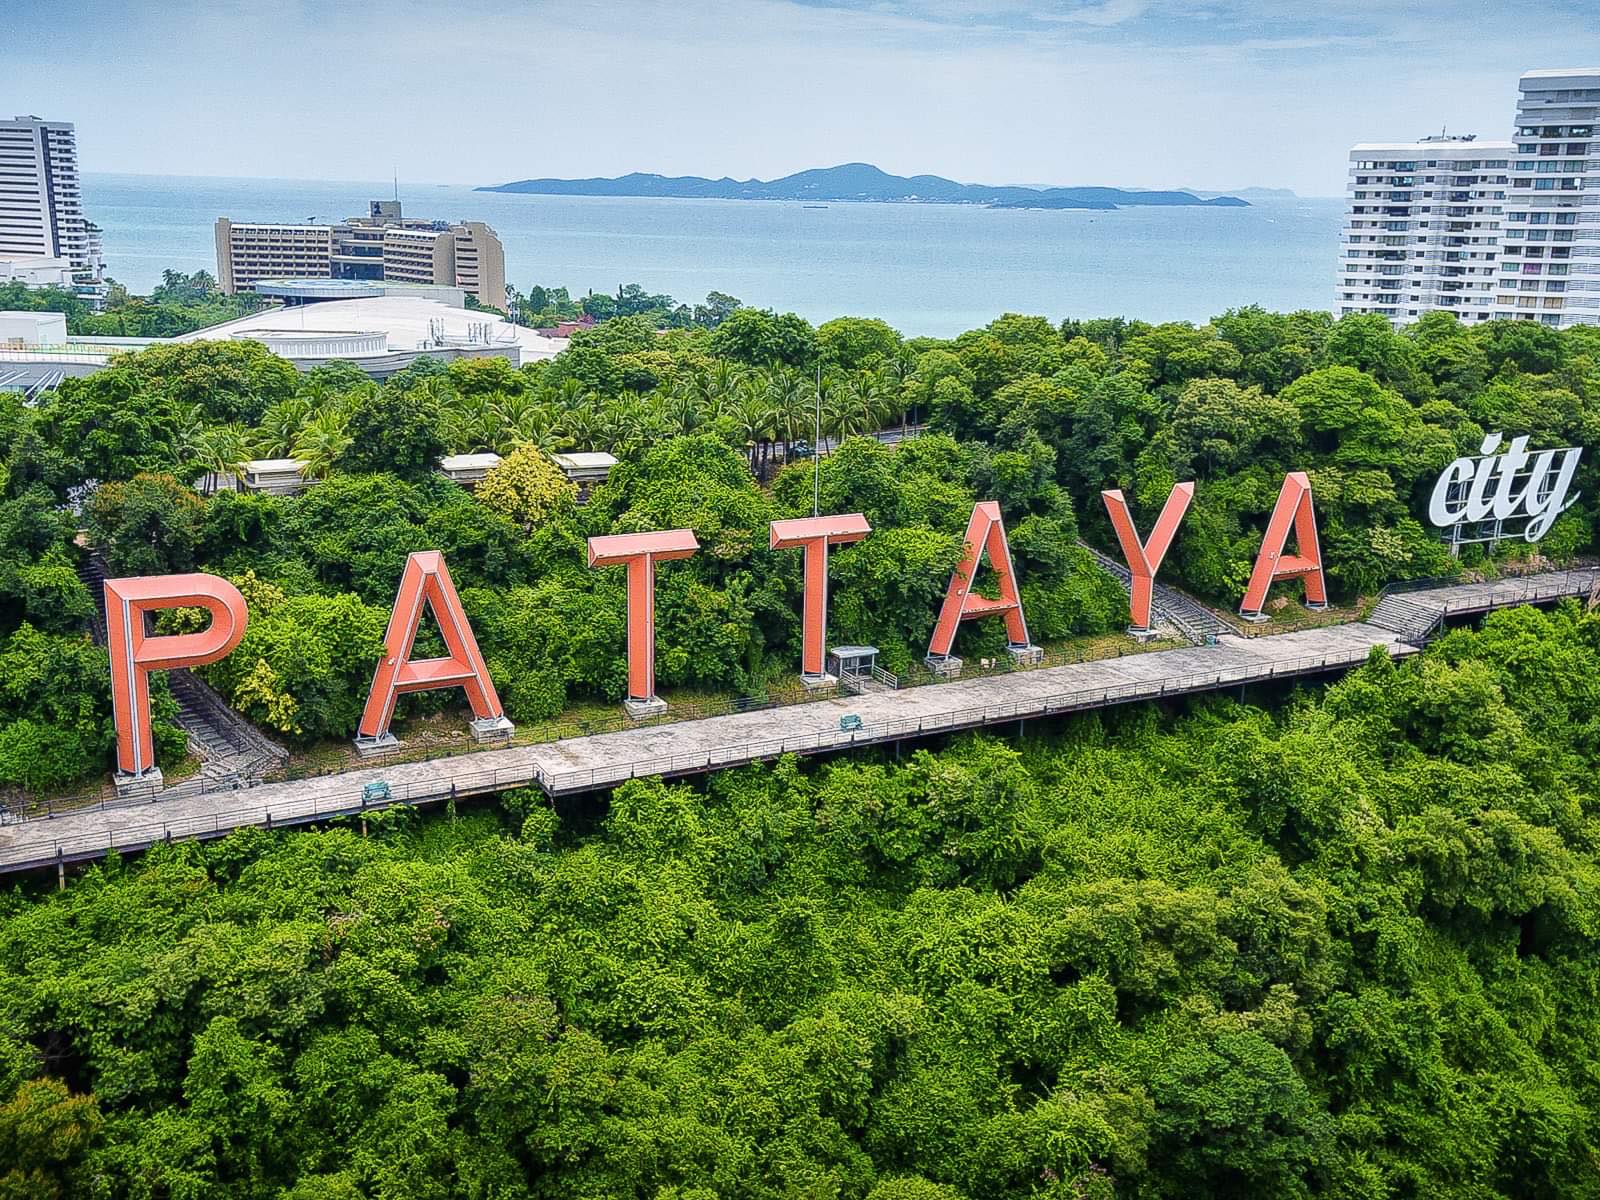 BANGKOK - PATTAYA (BAY Air Asia)